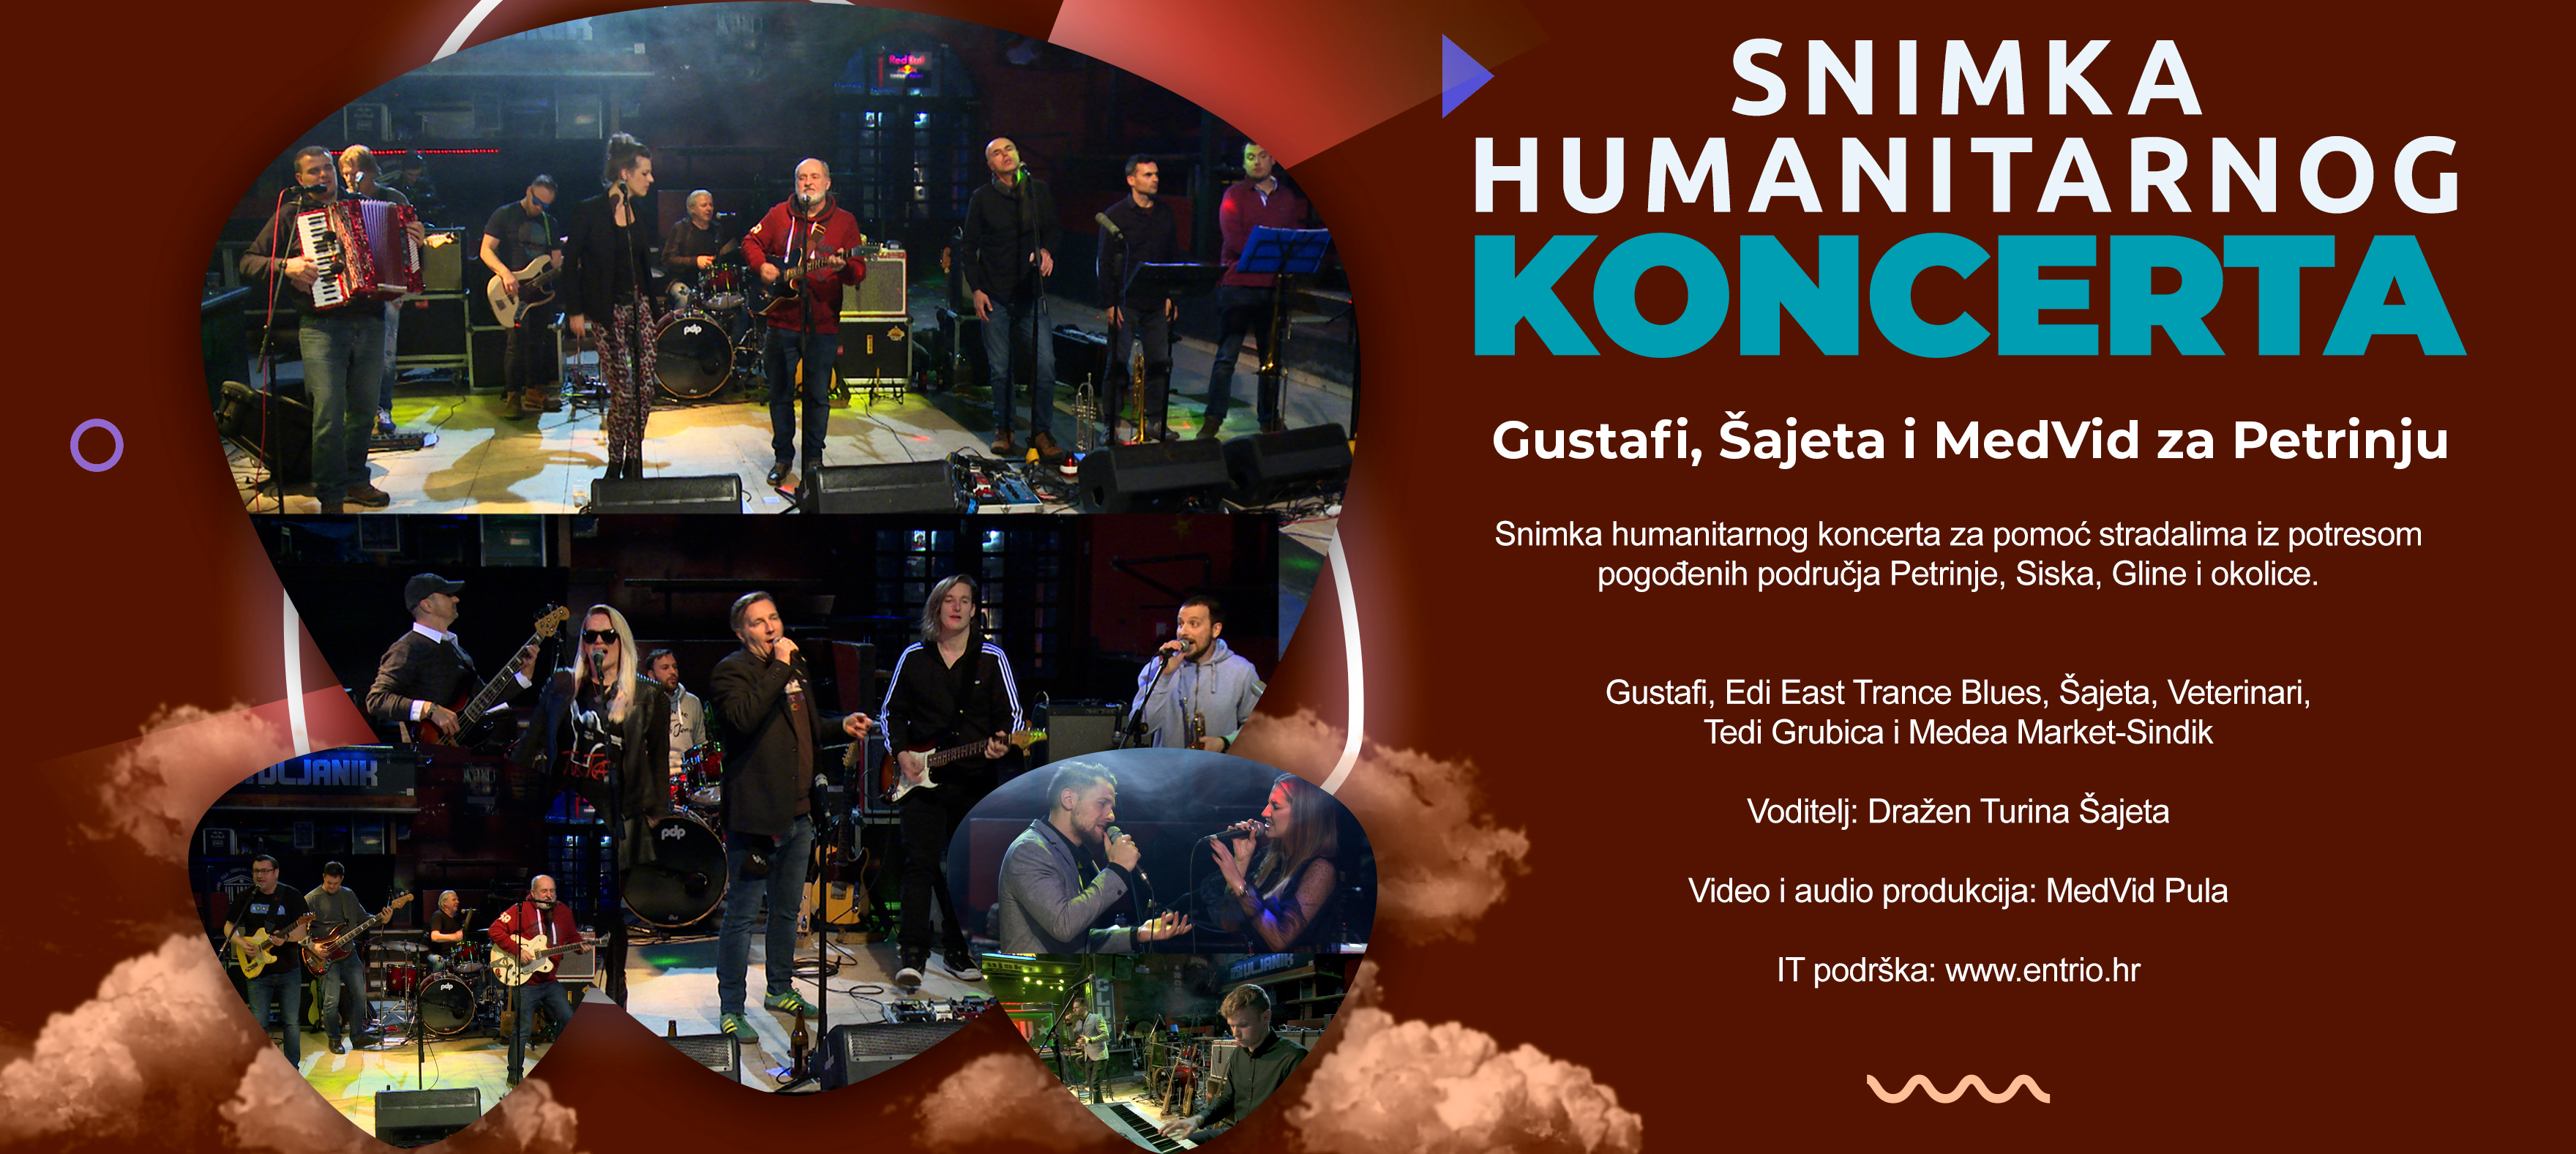 Snimka Humanitarnog koncerta Gustafi, Šajeta i MedVid za Petrinju